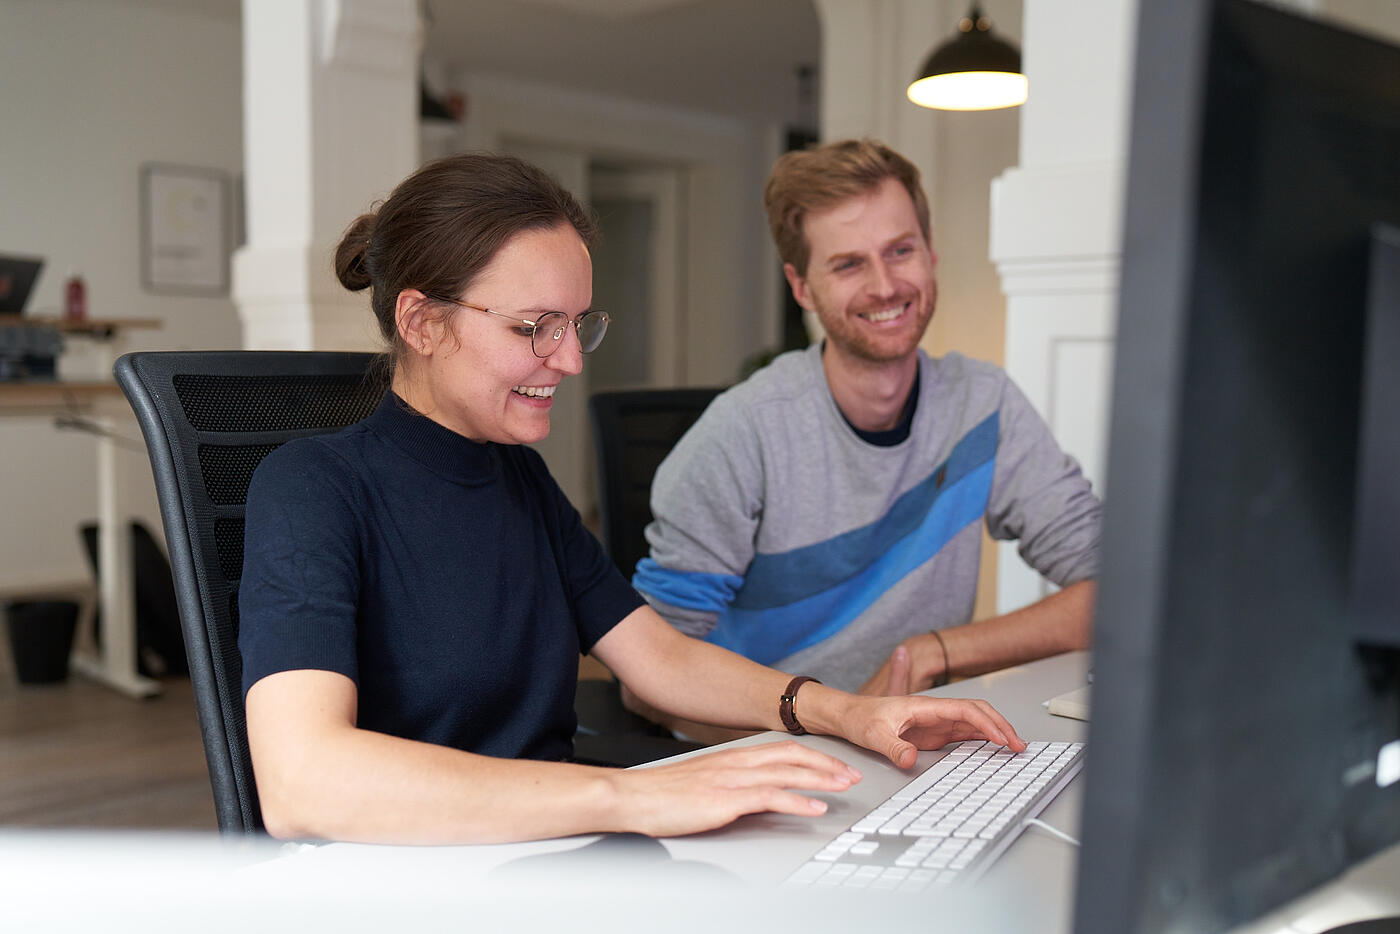 Zwei Mitarbeitende von visuellverstehen sitzen vorm Computer und lachen.